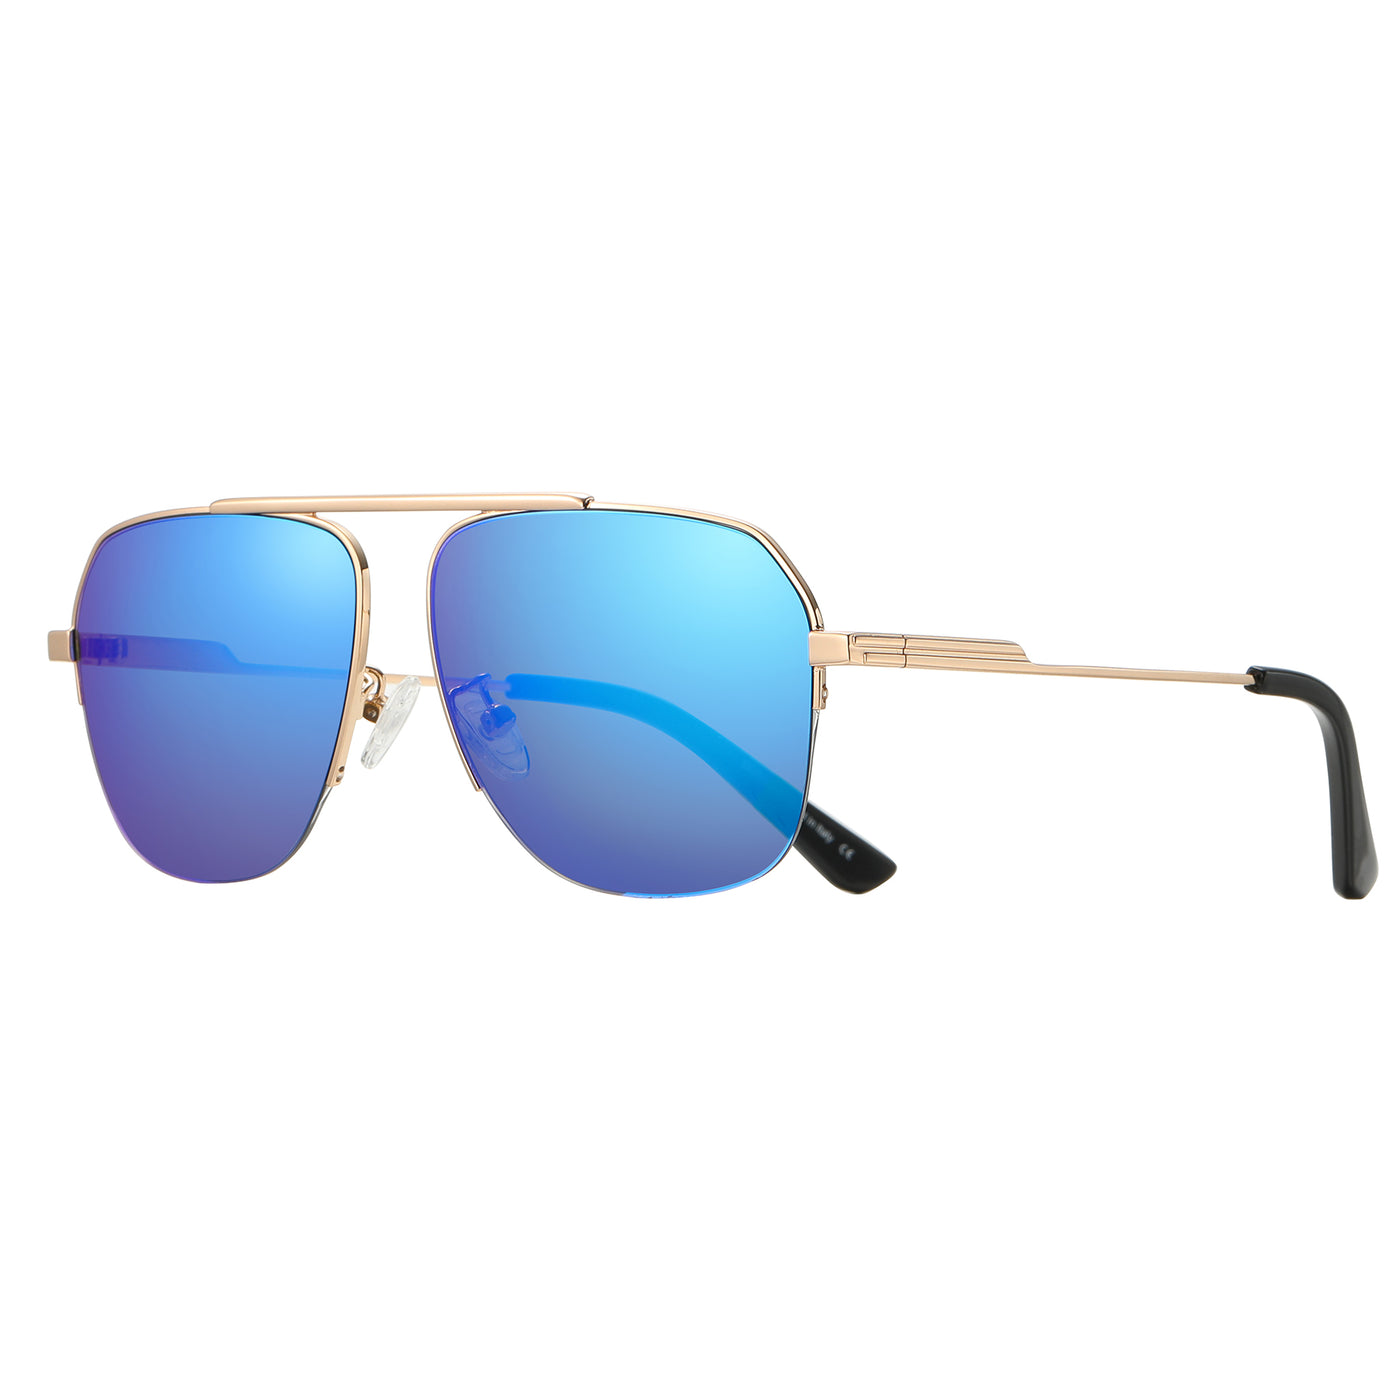 DUCO Retro Aviator Sunglasses for Mens Non-Polarized Sun Glasses for Driving DC3035